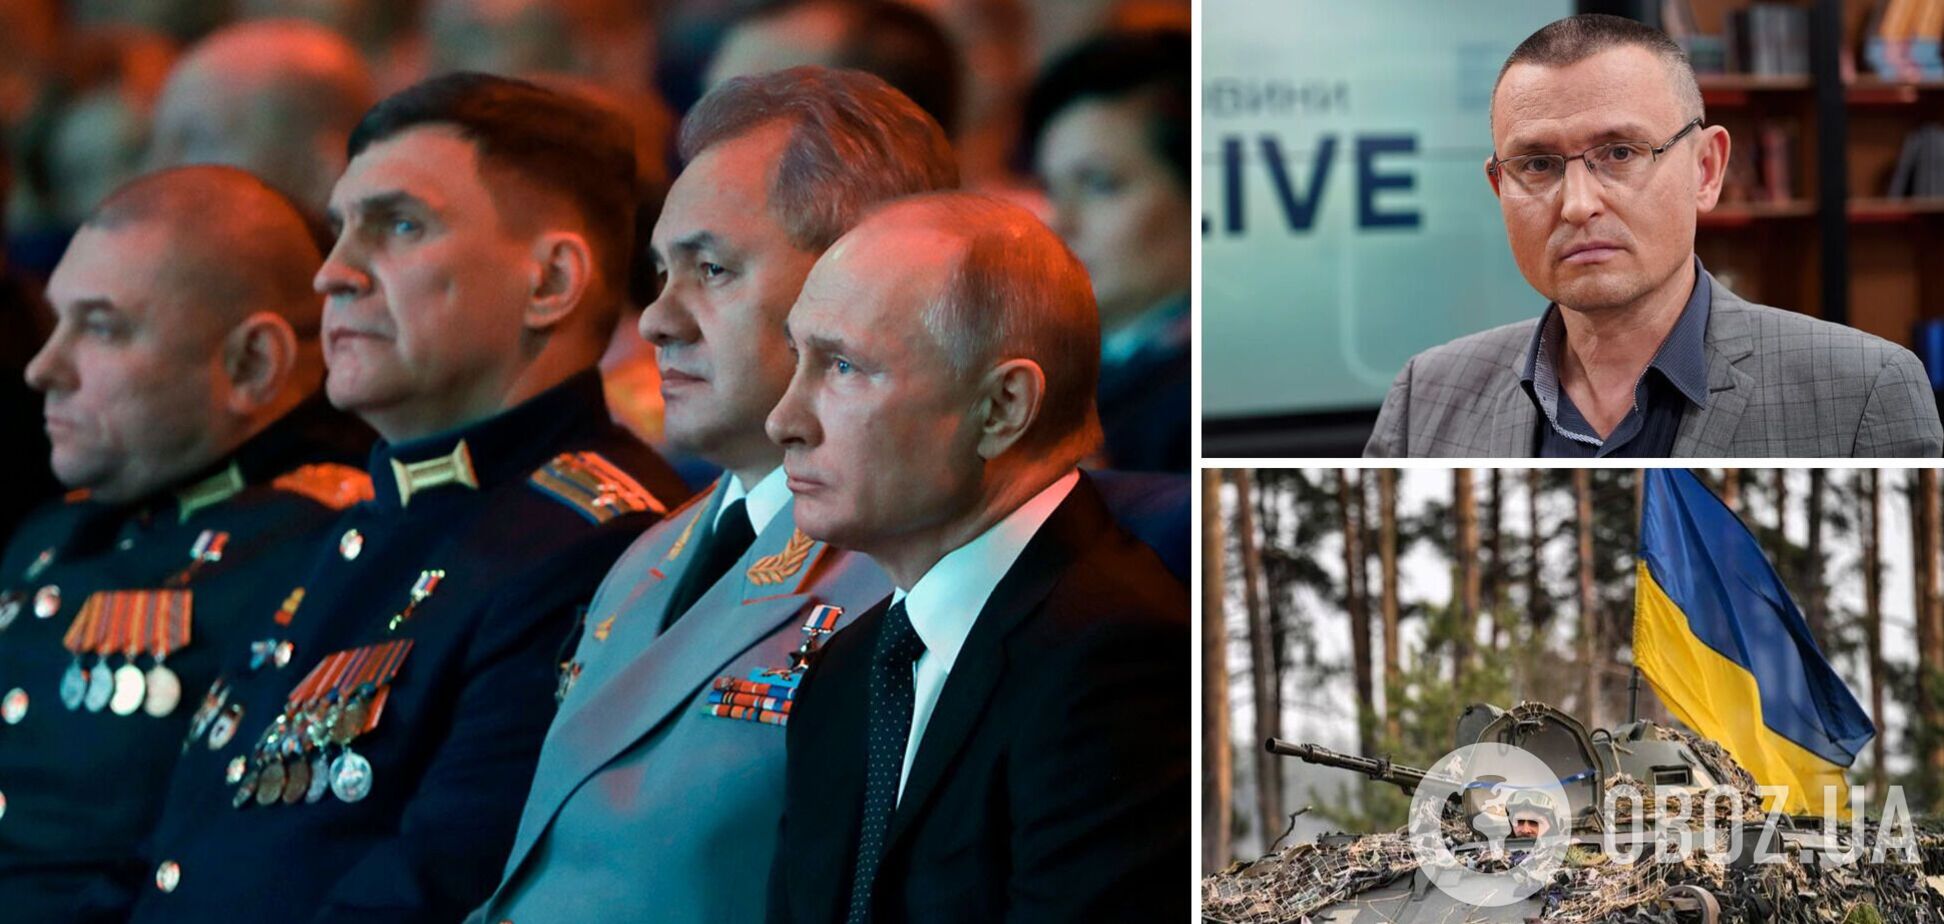 Селезнев: у Путина и его армии нет никаких шансов, но он будет наступать. Интервью